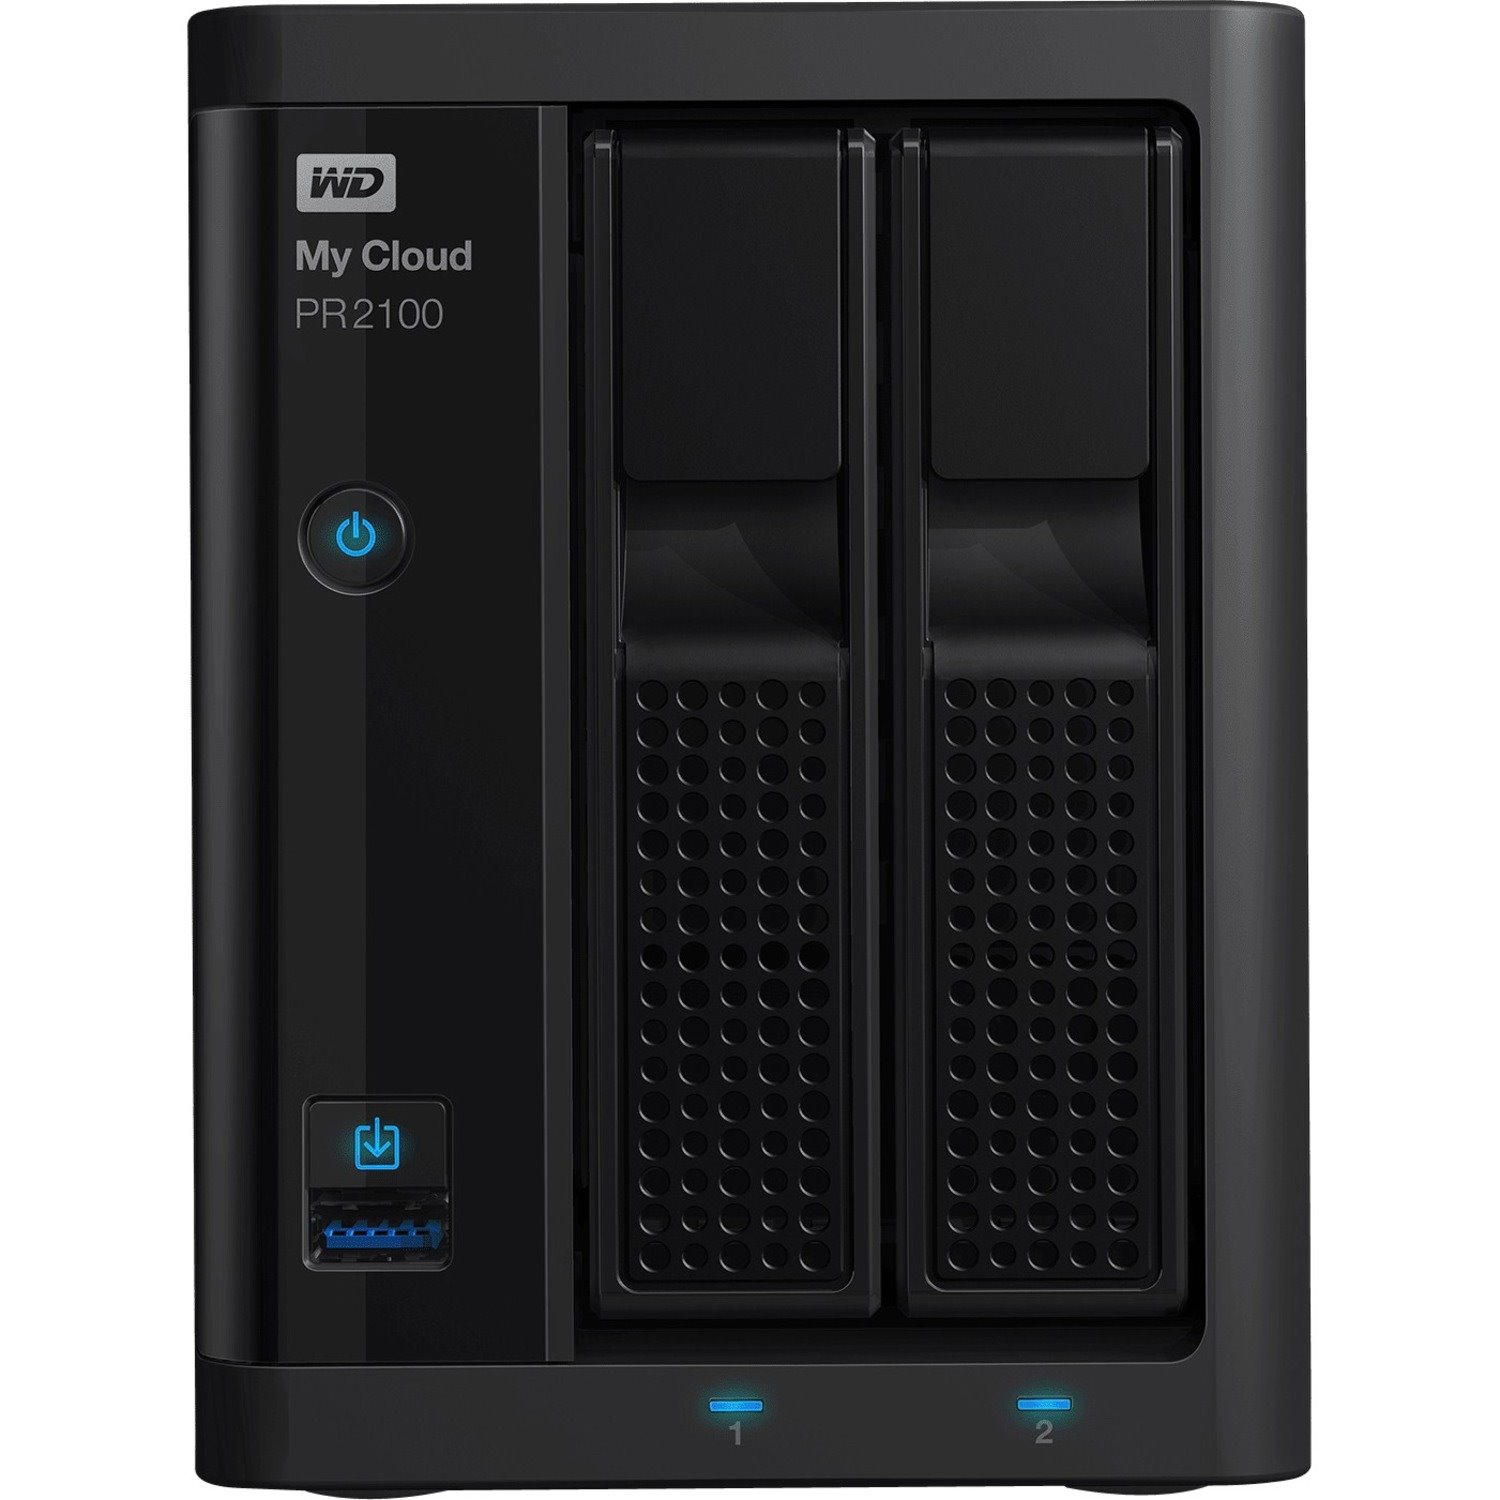 WD My Cloud Pro PR2100 2 x Total Bays NAS Storage System - 8 TB HDD - Intel Pentium N3710 Quad-core (4 Core) 1.60 GHz - 4 GB RAM - DDR3L SDRAM Desktop